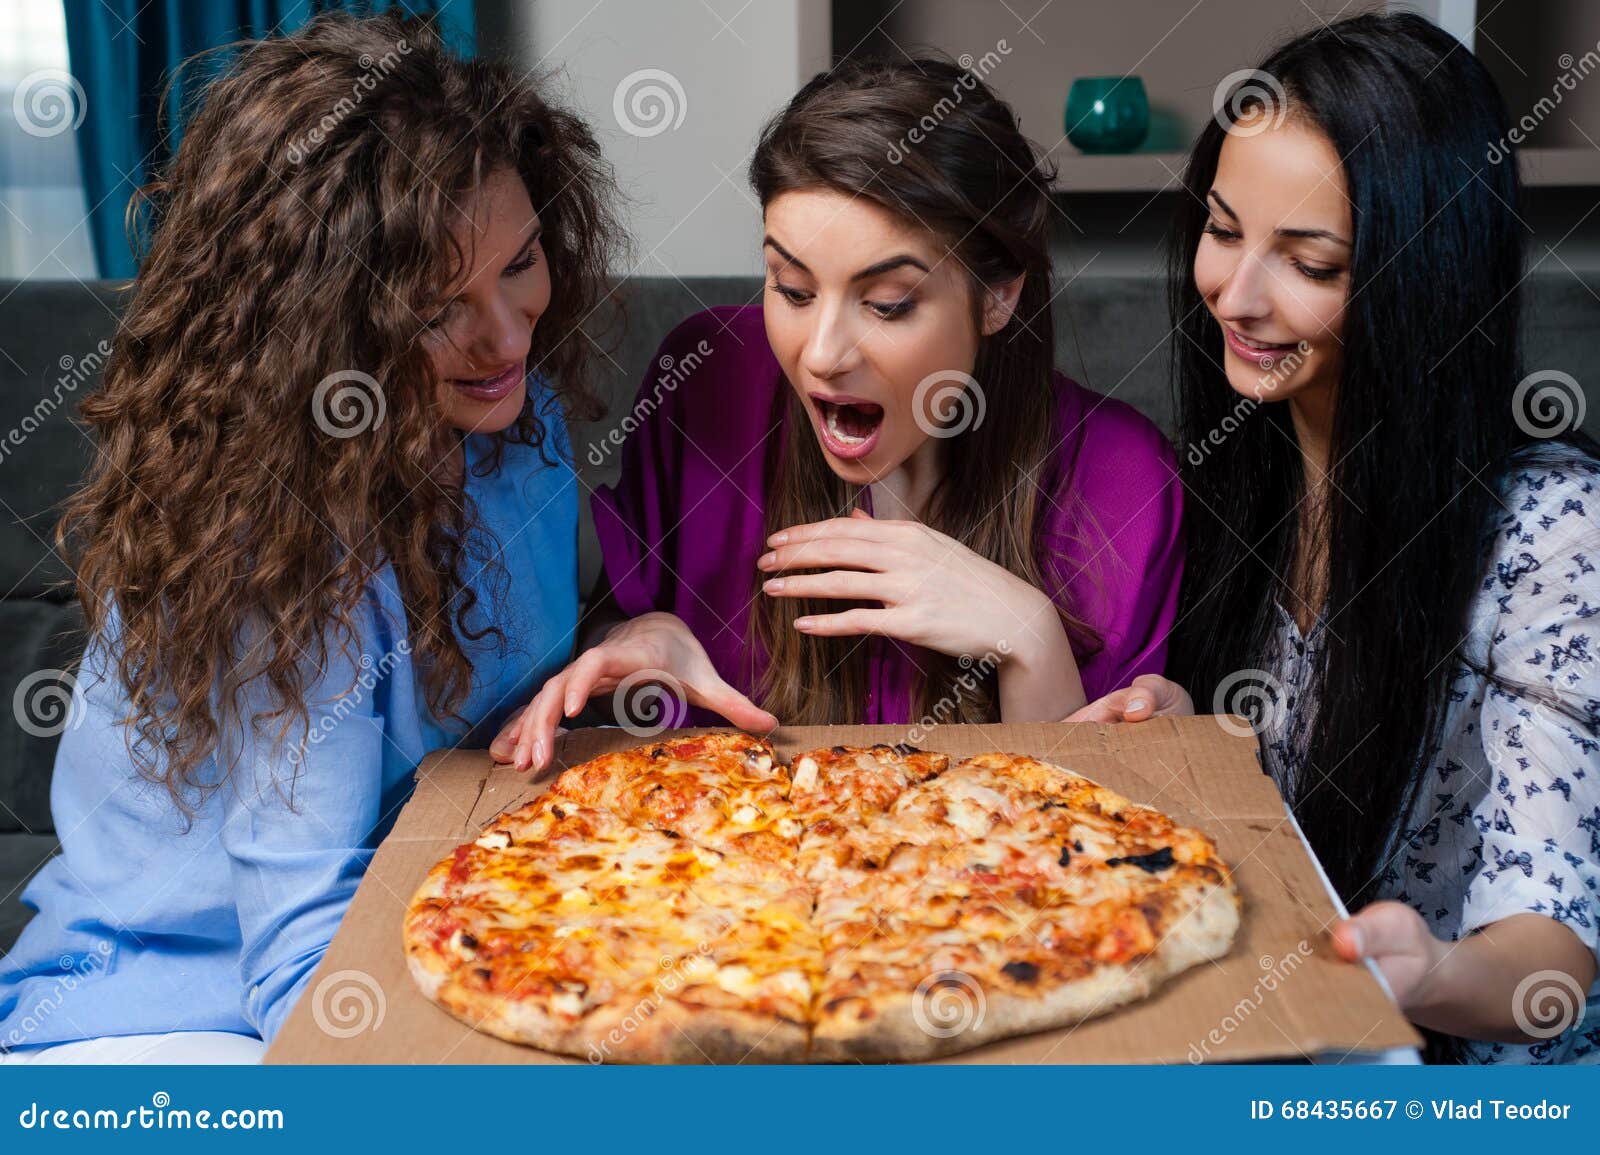 фотосессия с пиццей девушка фото 77